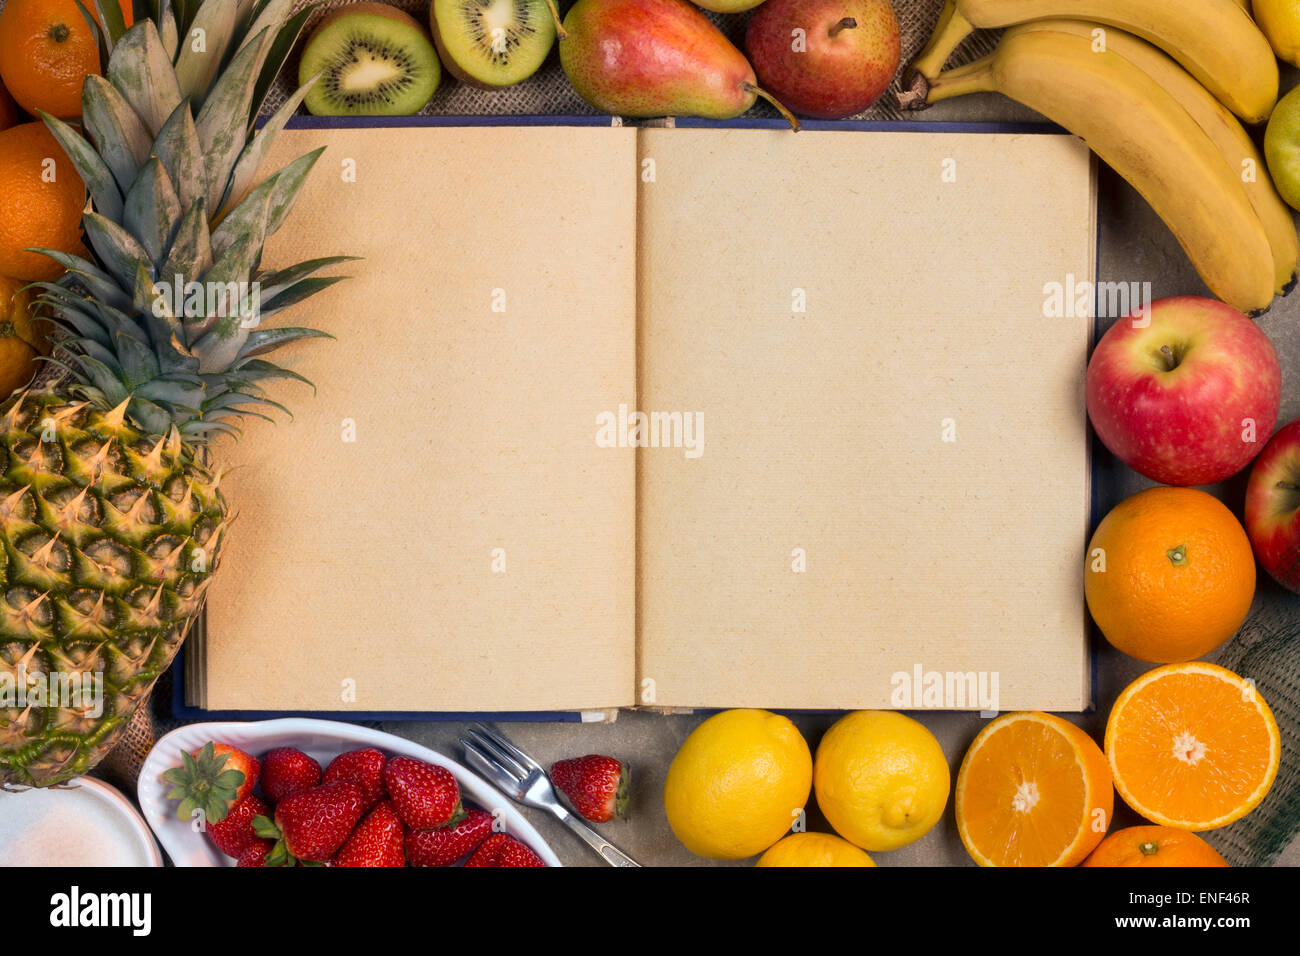 Eine Auswahl an frischem Obst und ein Rezeptbuch - Platz für text Stockfoto